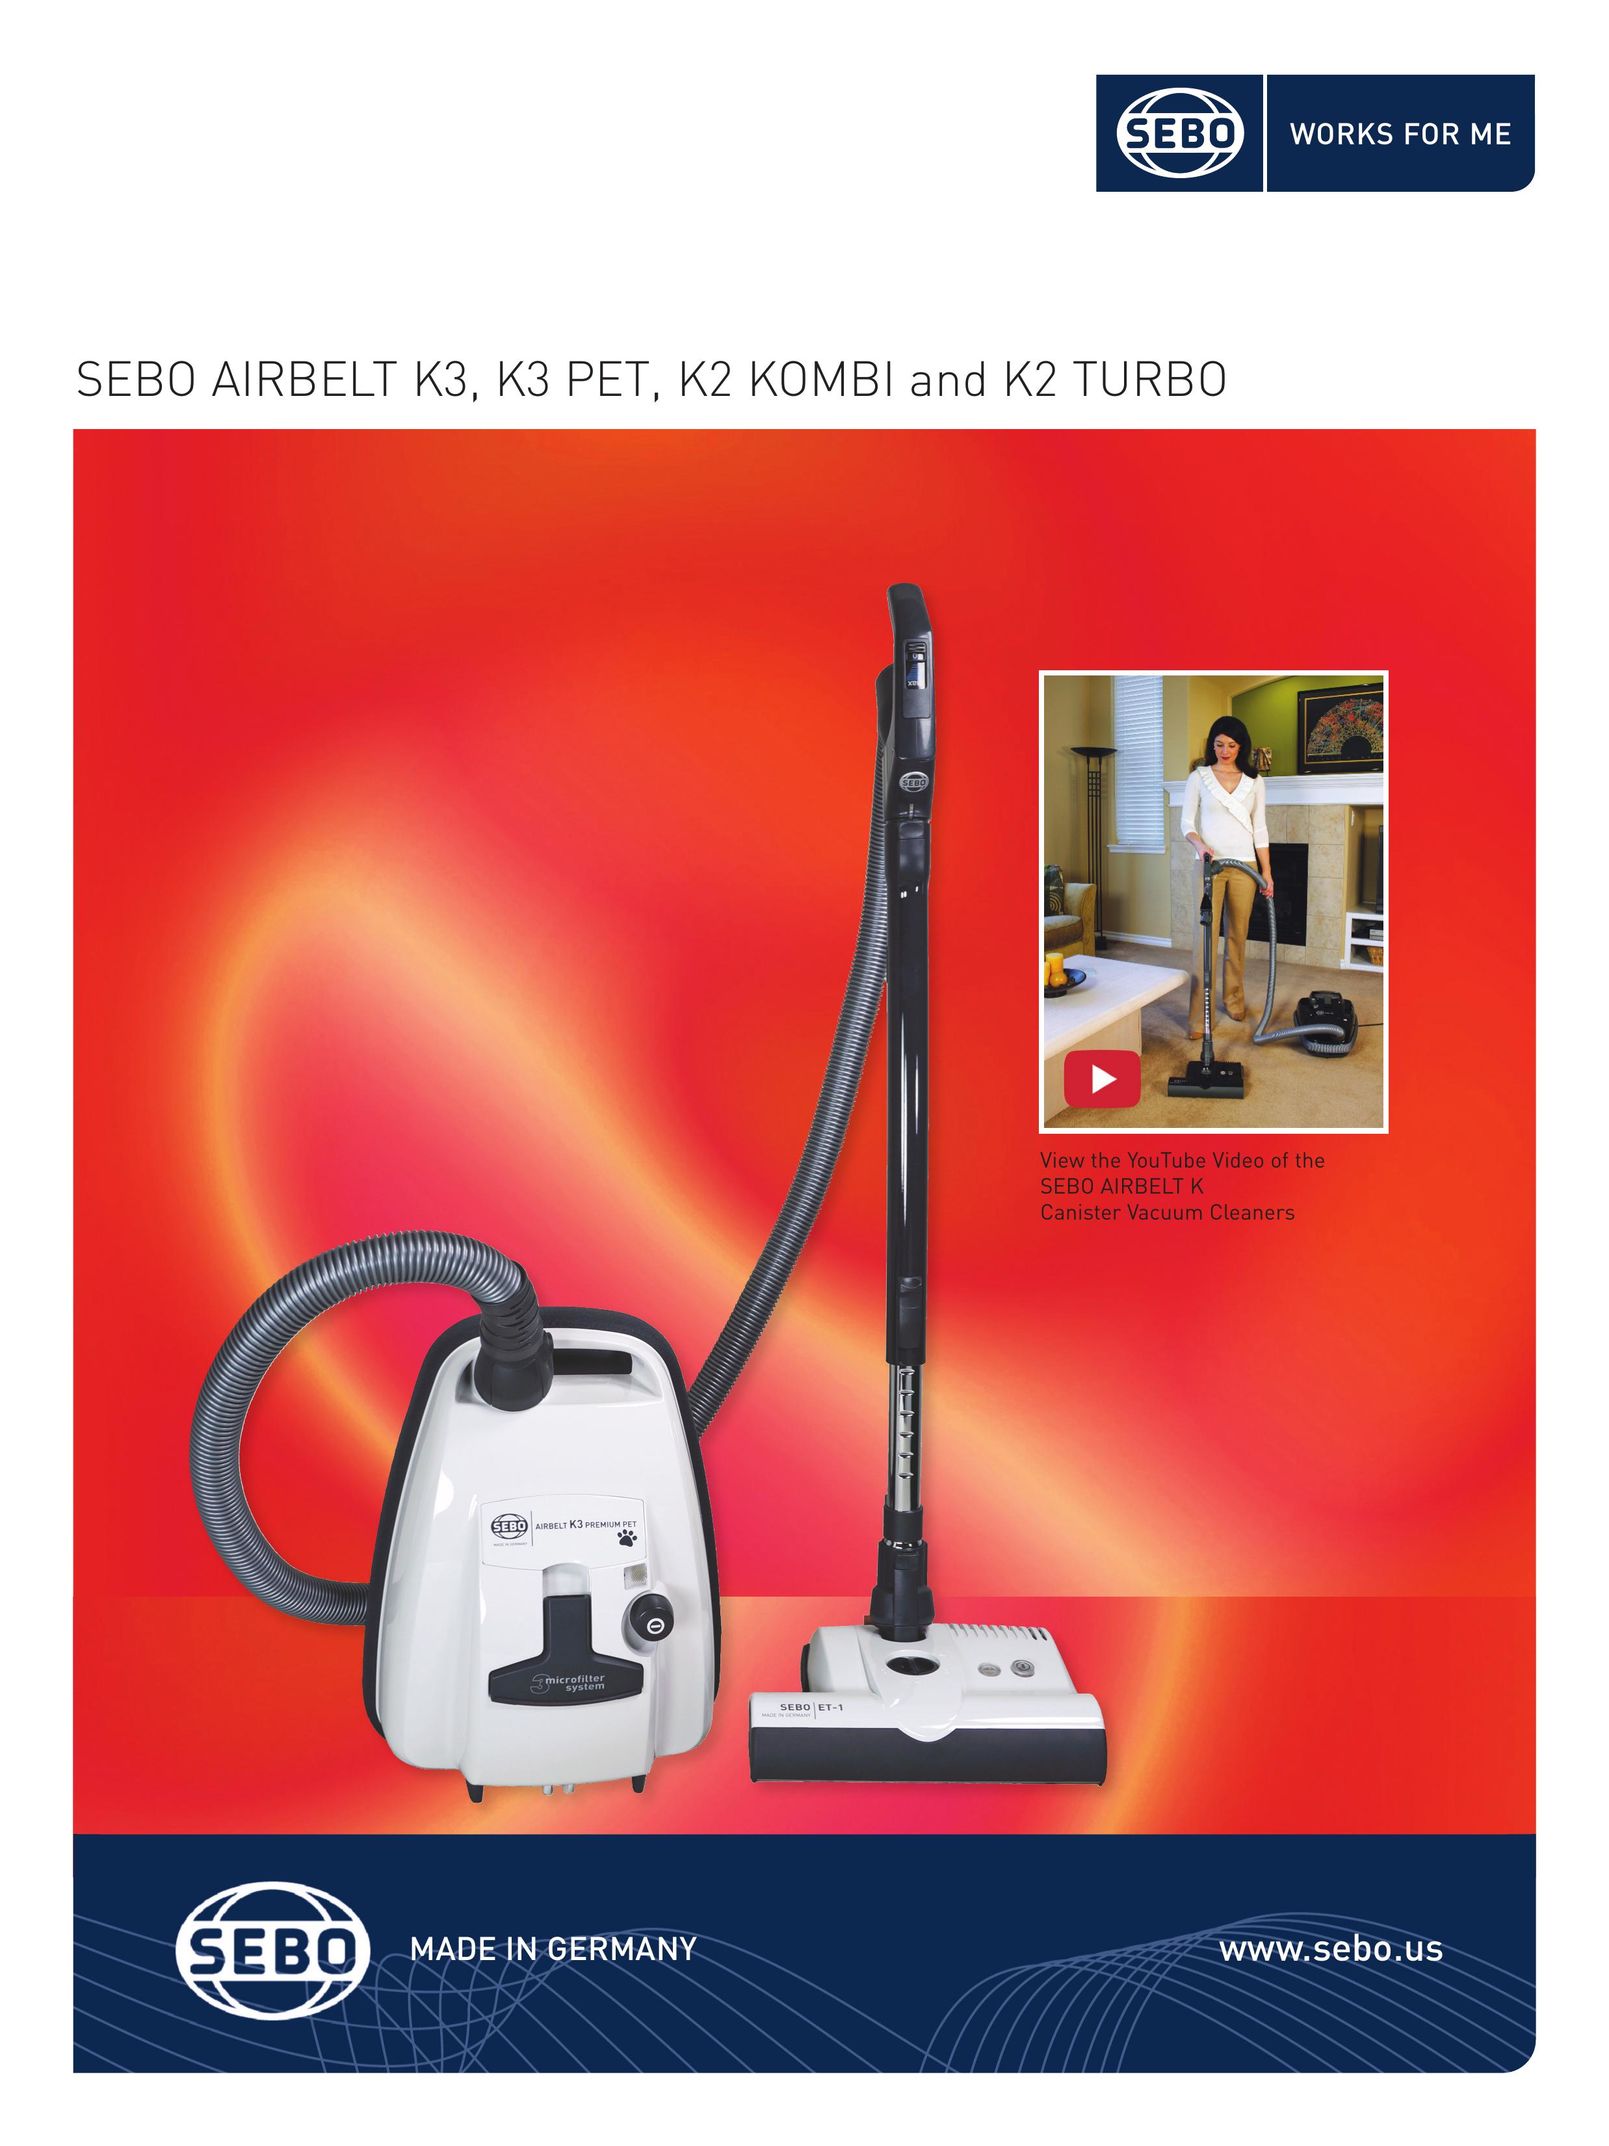 Sebo K2 KOMBI and K2 TURBO Vacuum Cleaner User Manual